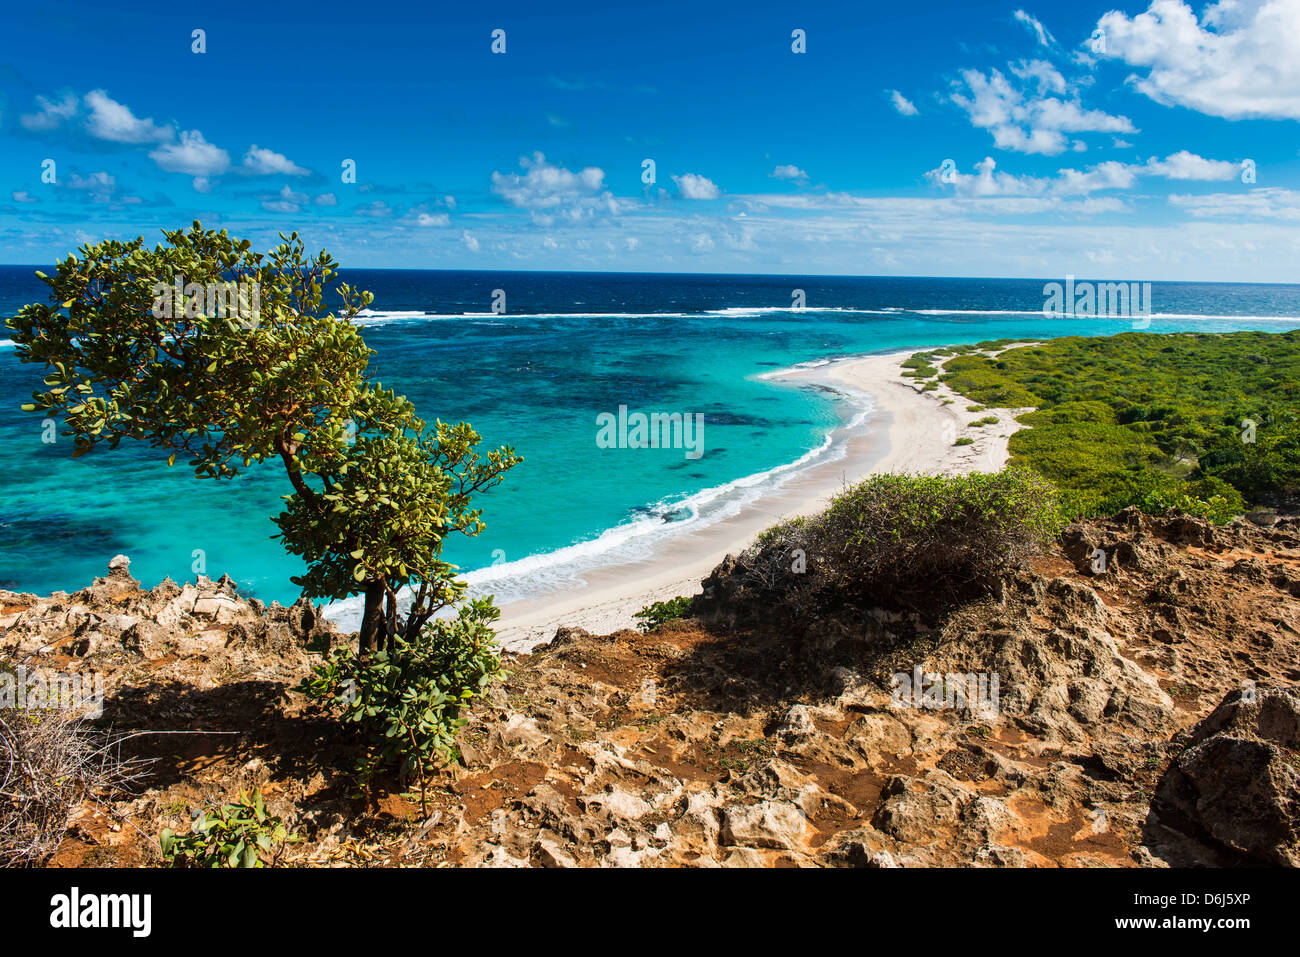 Vue sur les eaux turquoises de Barbuda, Antigua-et-Barbuda, Antilles, Caraïbes, Amérique Centrale Banque D'Images